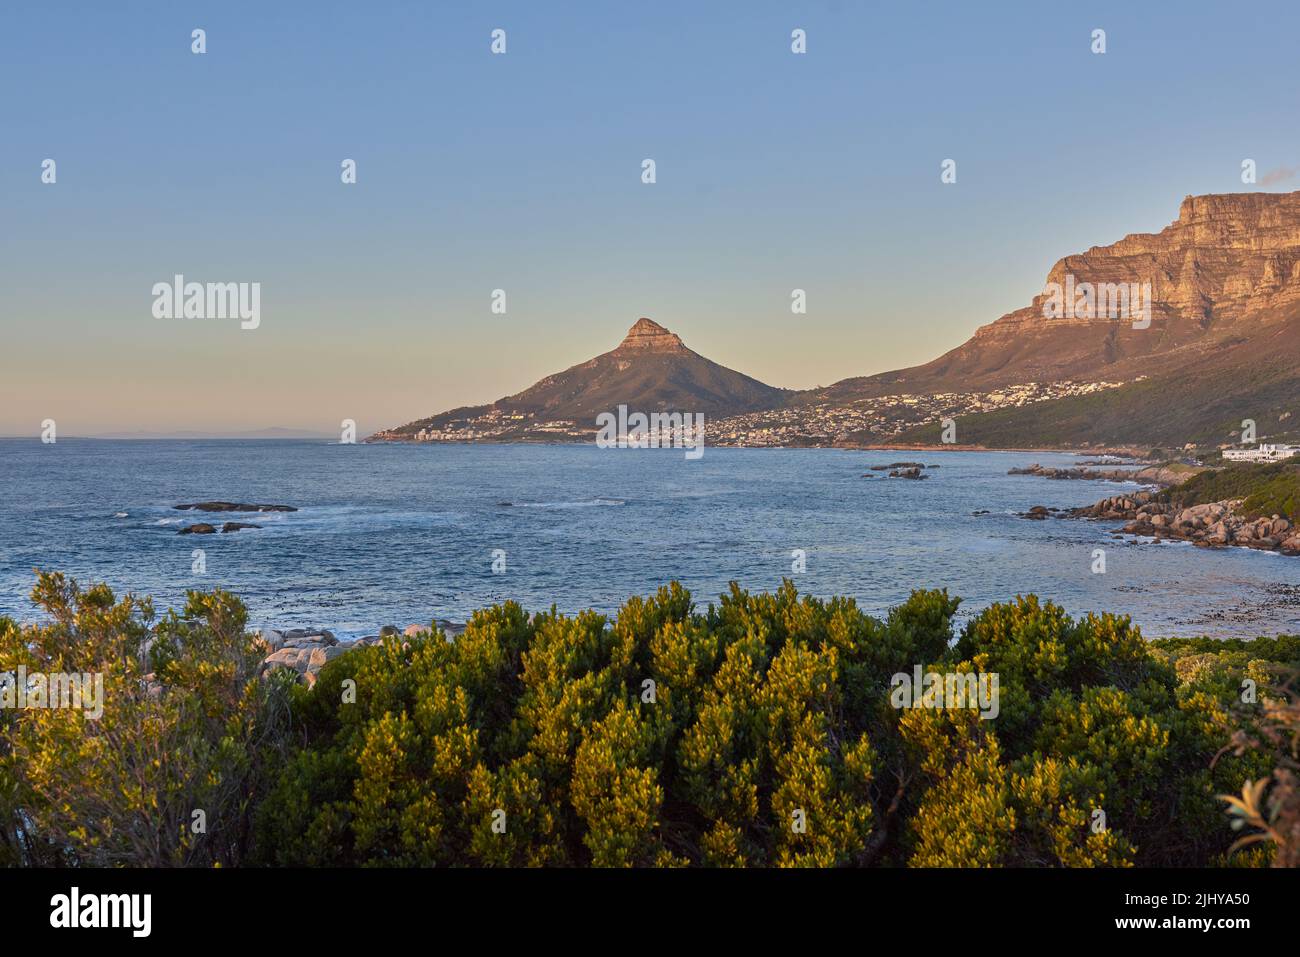 Panorama de la montagne de la Table et de la mer au coucher du soleil en Afrique du Sud. Paysage naturel pittoresque d'une côte à l'aube près d'un océan calme et paisible contre un bleu Banque D'Images